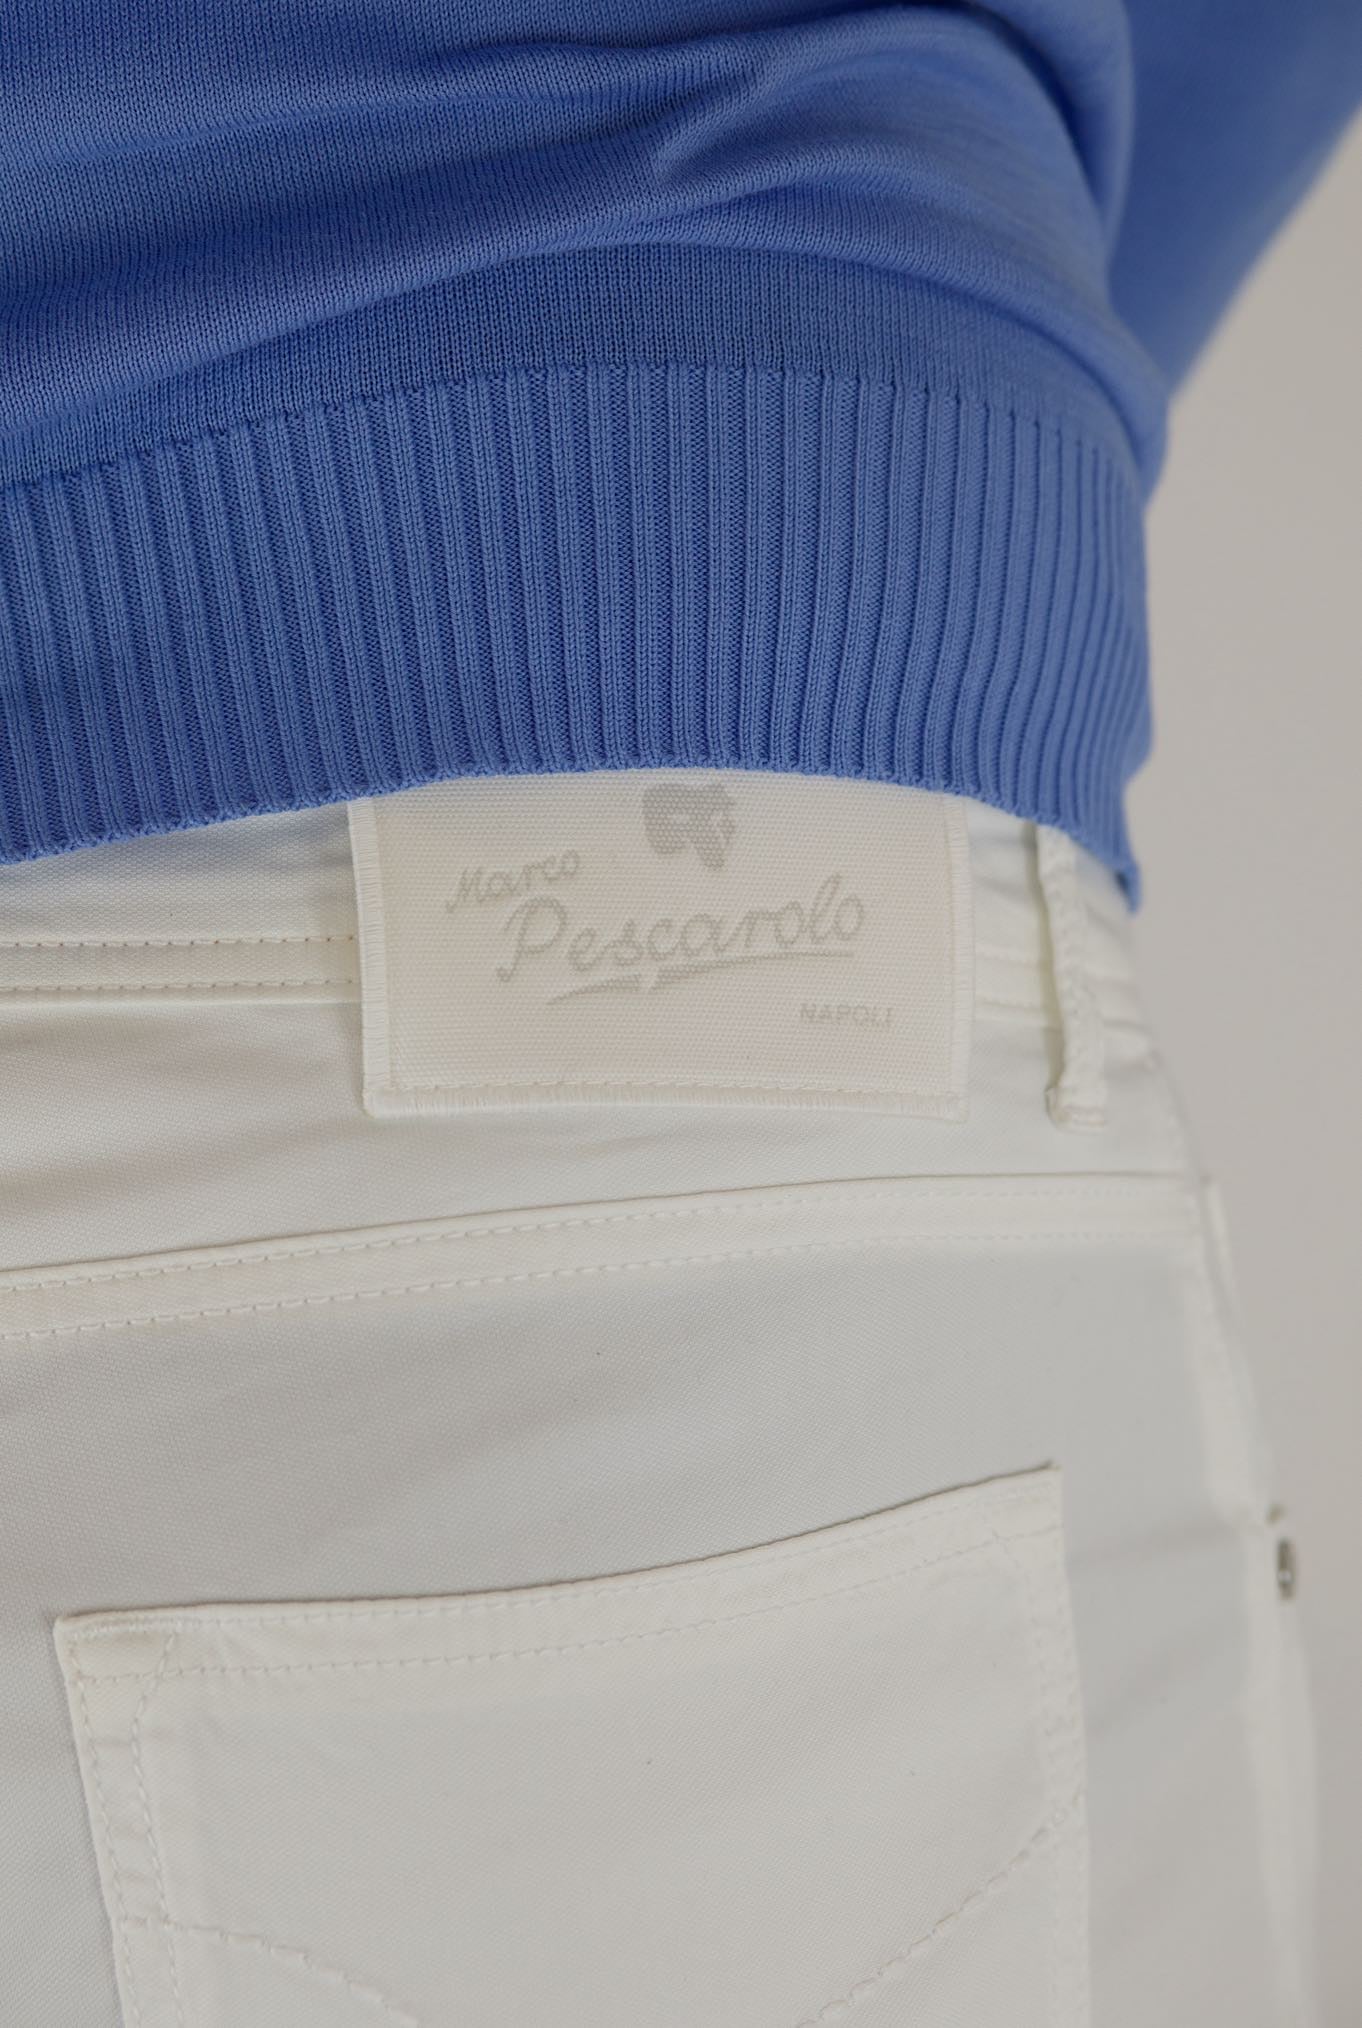 PESCAROLO 5 Pocket Trousers mod. Black Cotton Silk White